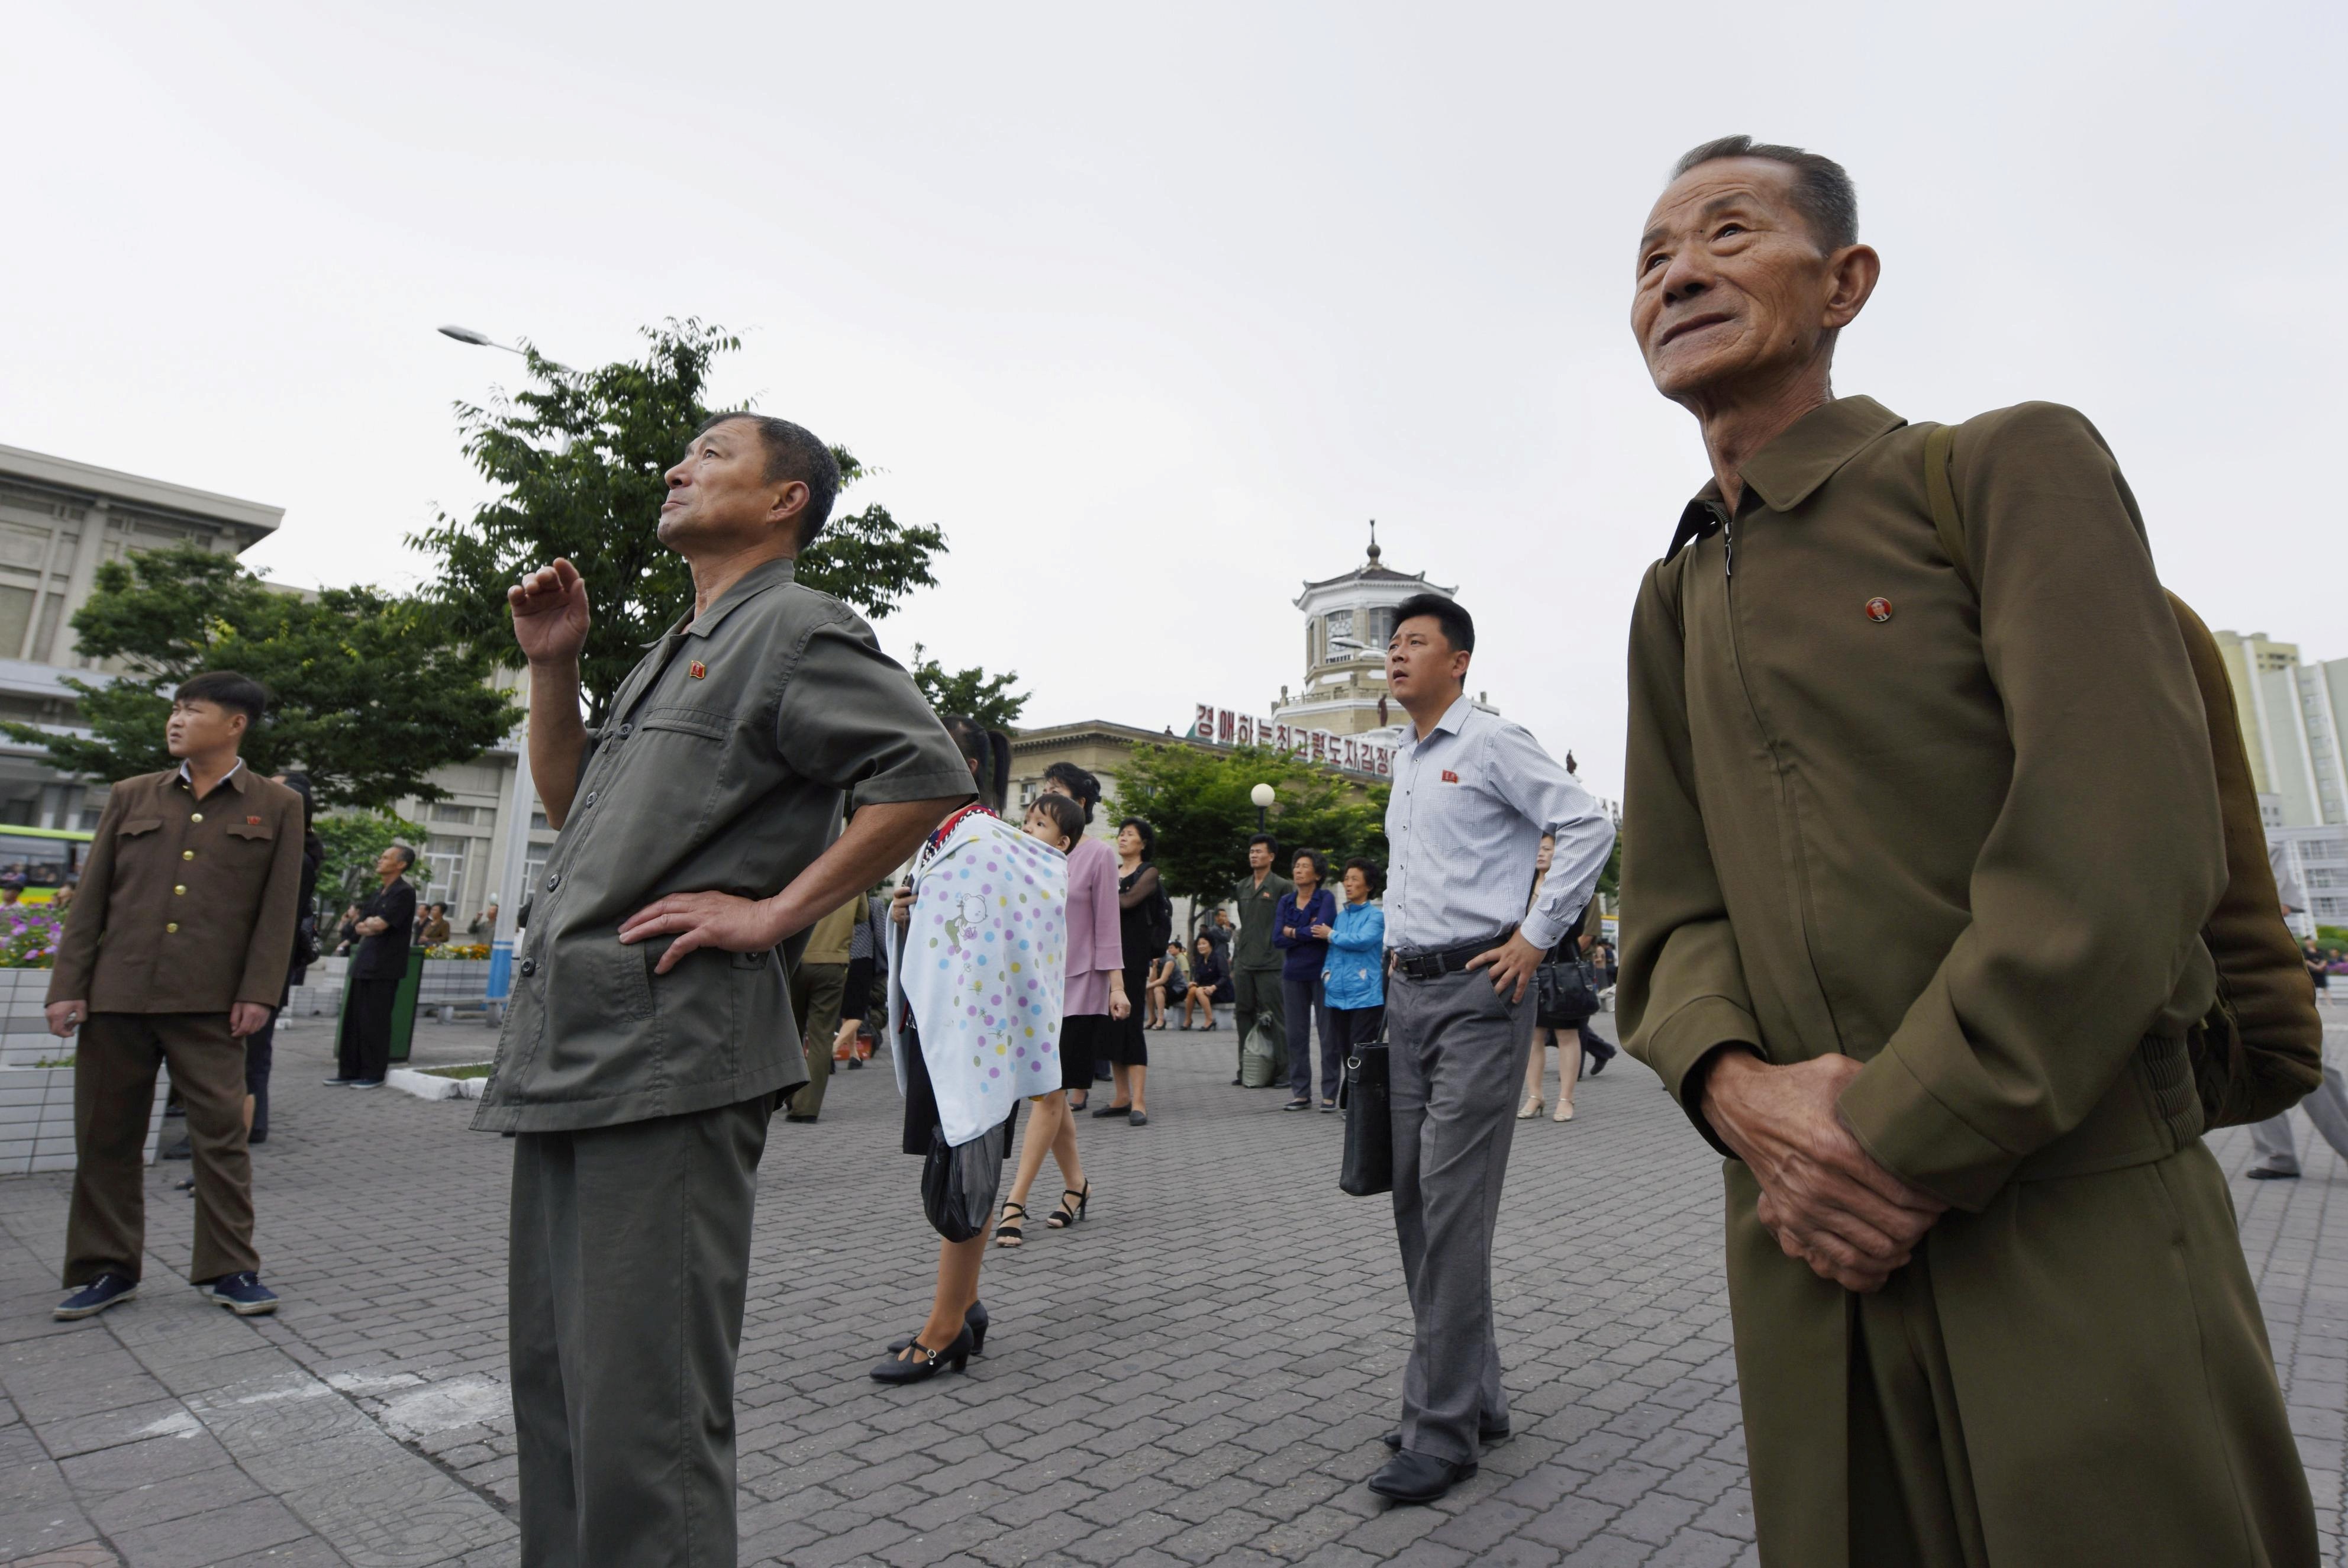 مواطنى كوريا الشمالية يتابعون أخبار القمة فى الشوارع